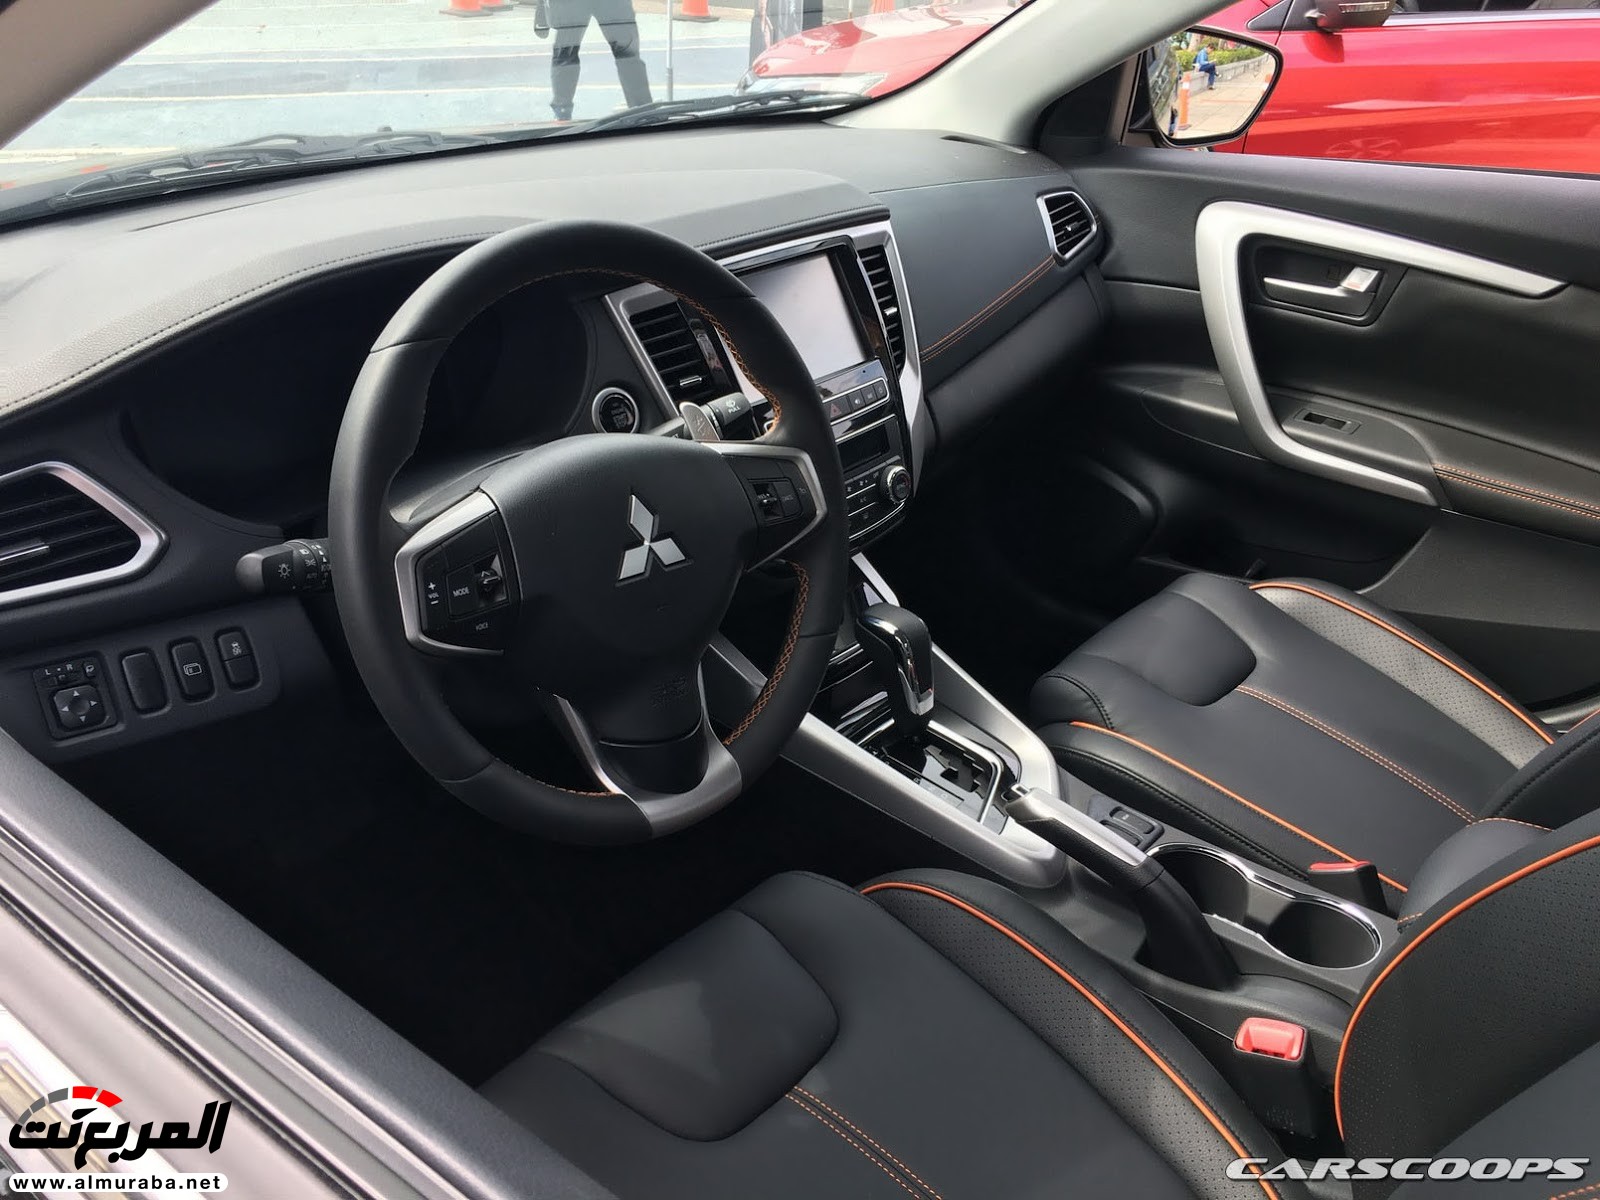 "بالصور" ميتسوبيشي جراند لانسر 2018 الجديدة تكشف نفسها "تقرير ومواصفات" Mitsubishi Grand Lancer 18